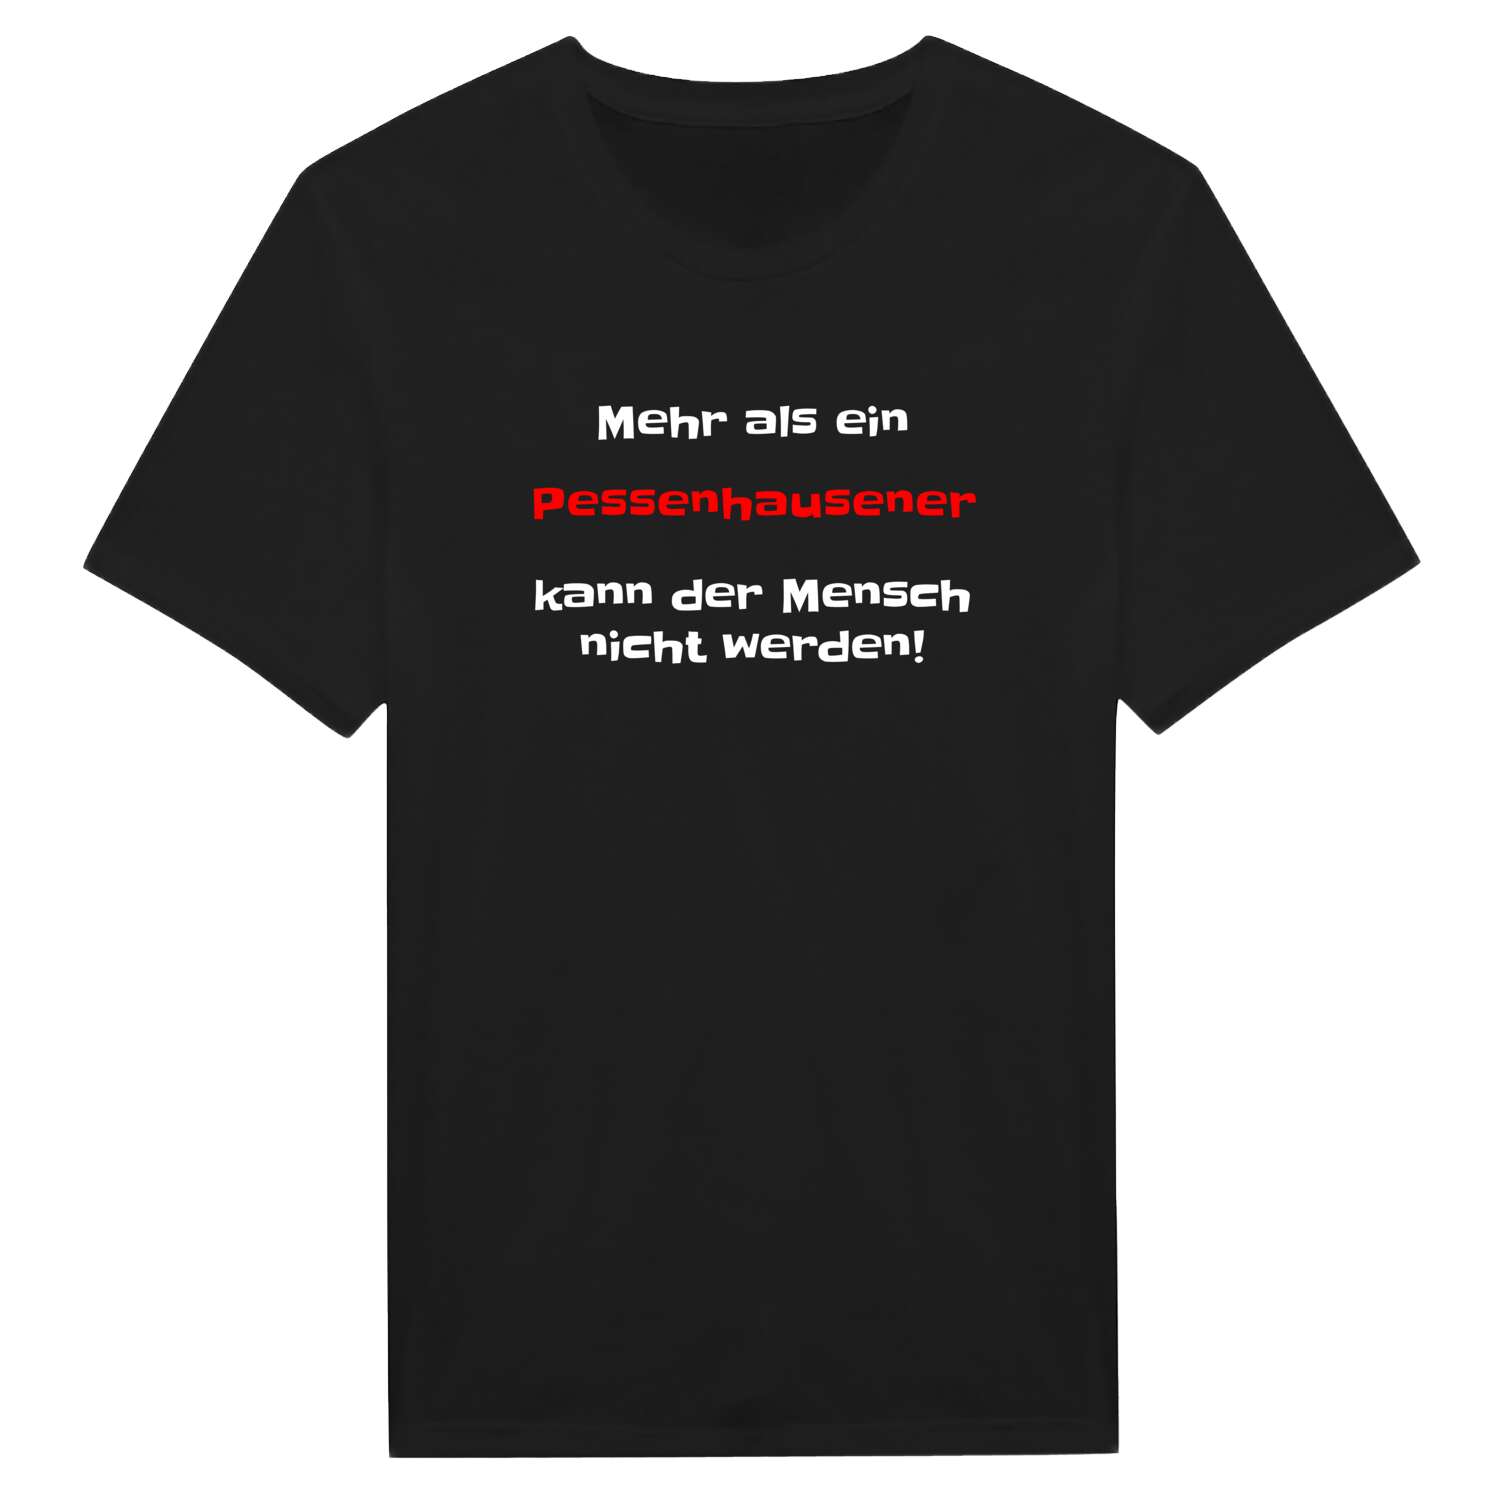 Pessenhausen T-Shirt »Mehr als ein«